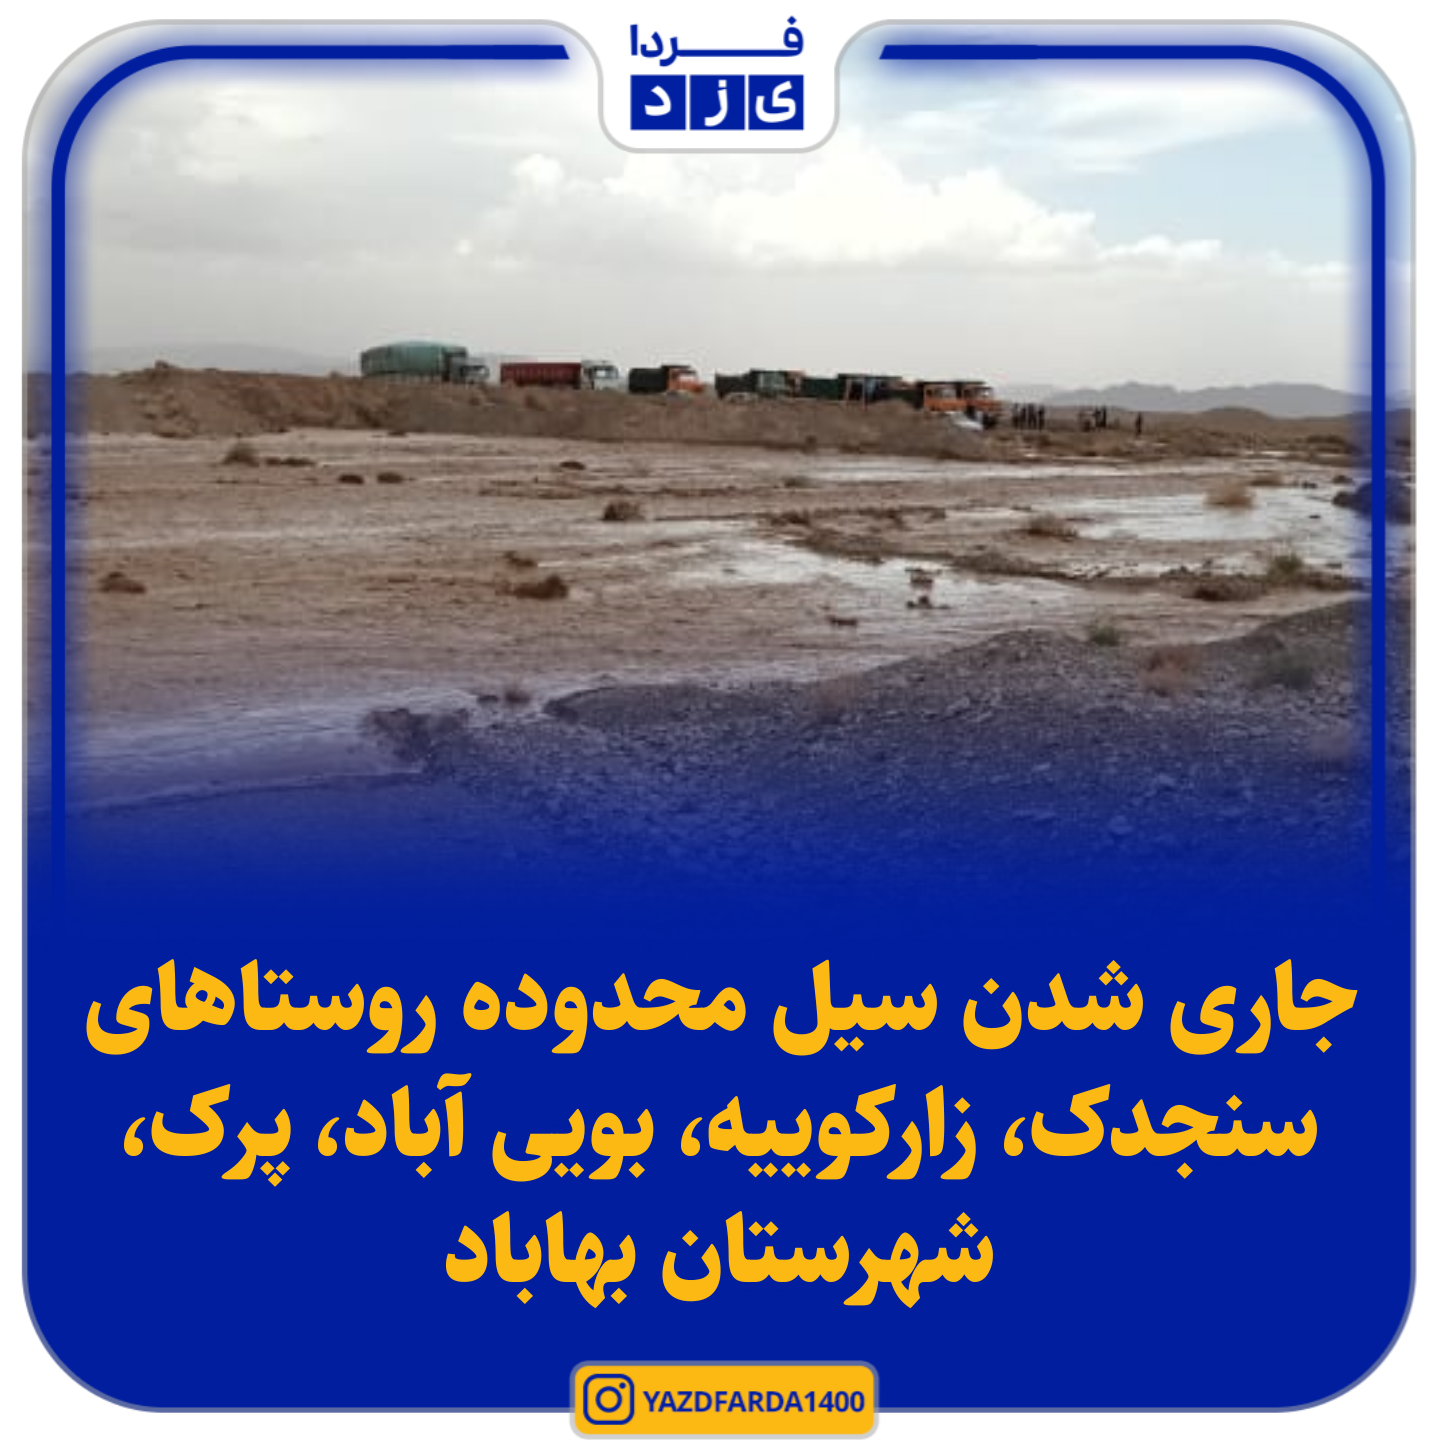 جاری شدن سیل محدوده روستاهای سنجدک زارکوییه، بویی آباد، پرک، شهرستان بهاباد